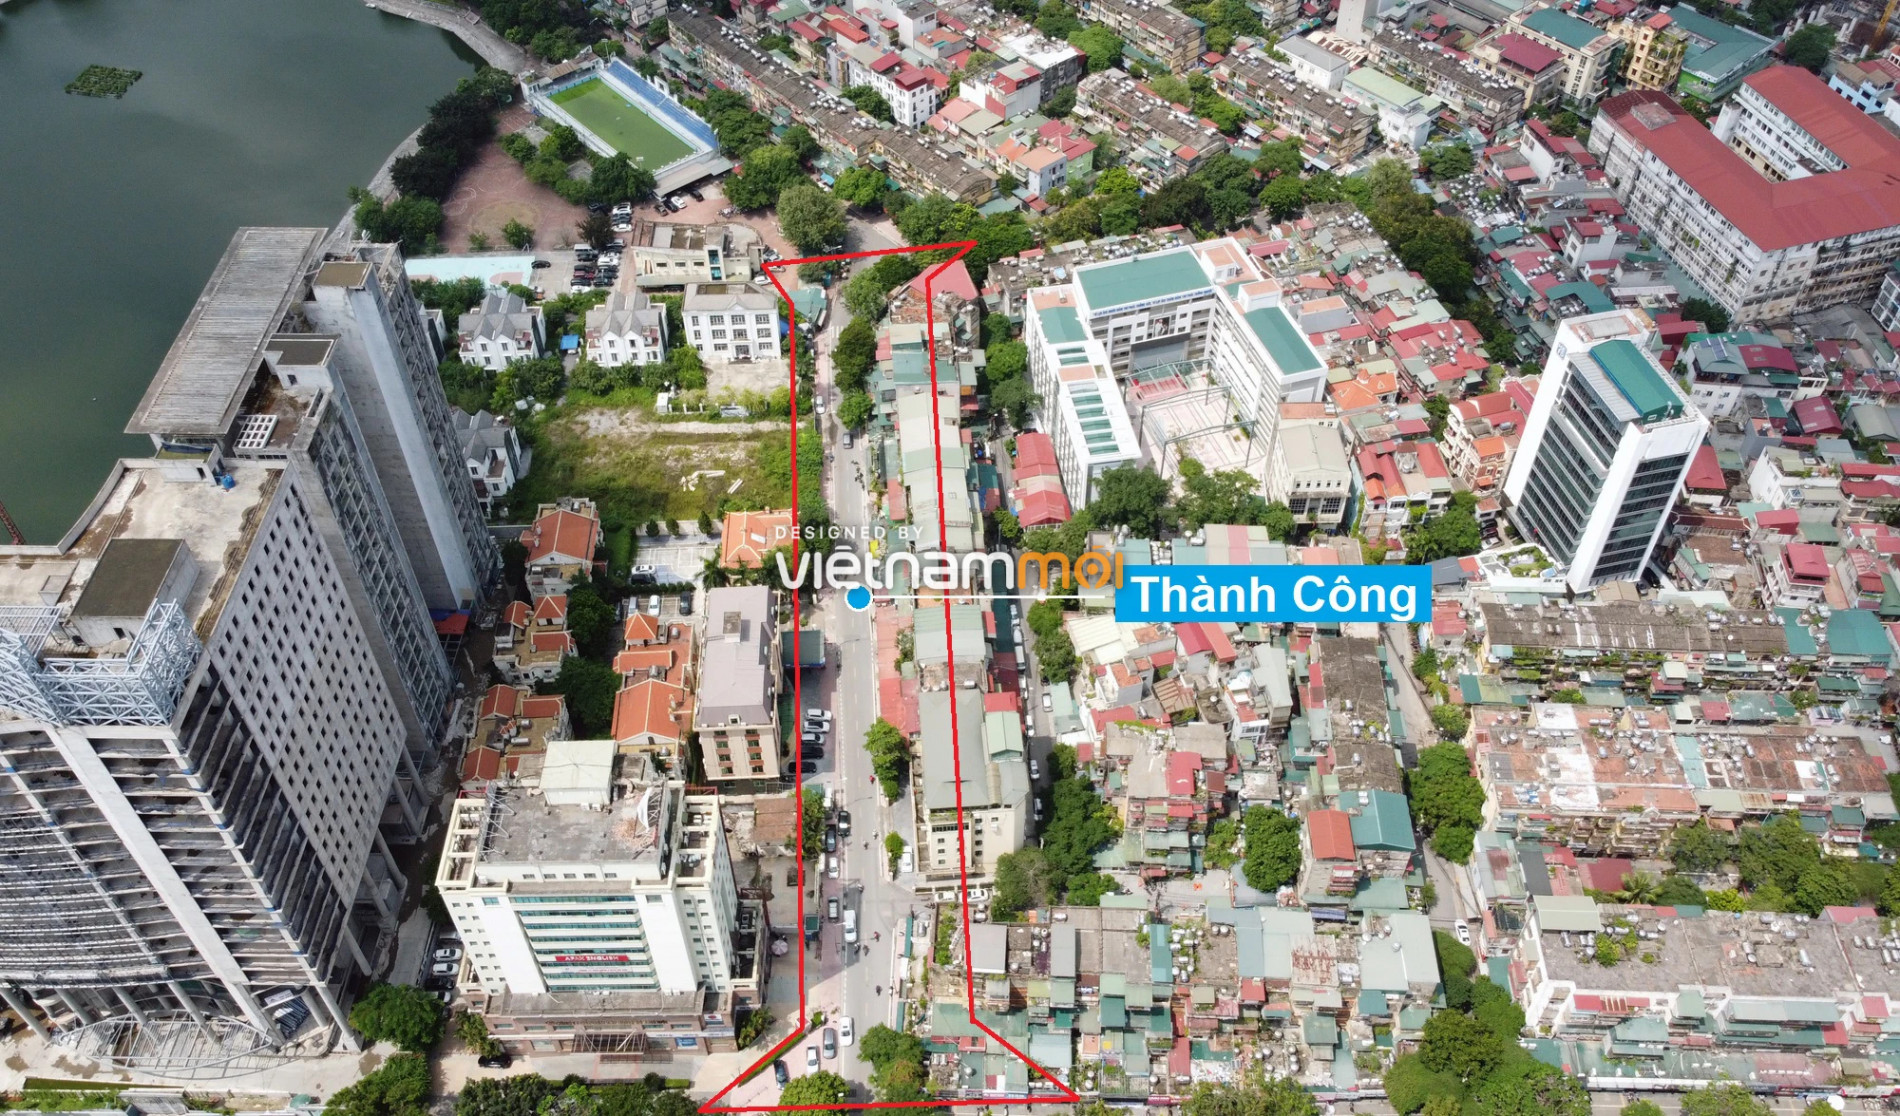 Những khu đất sắp thu hồi để mở đường ở phường Thành Công, Ba Đình, Hà Nội (phần 1) - Ảnh 6.